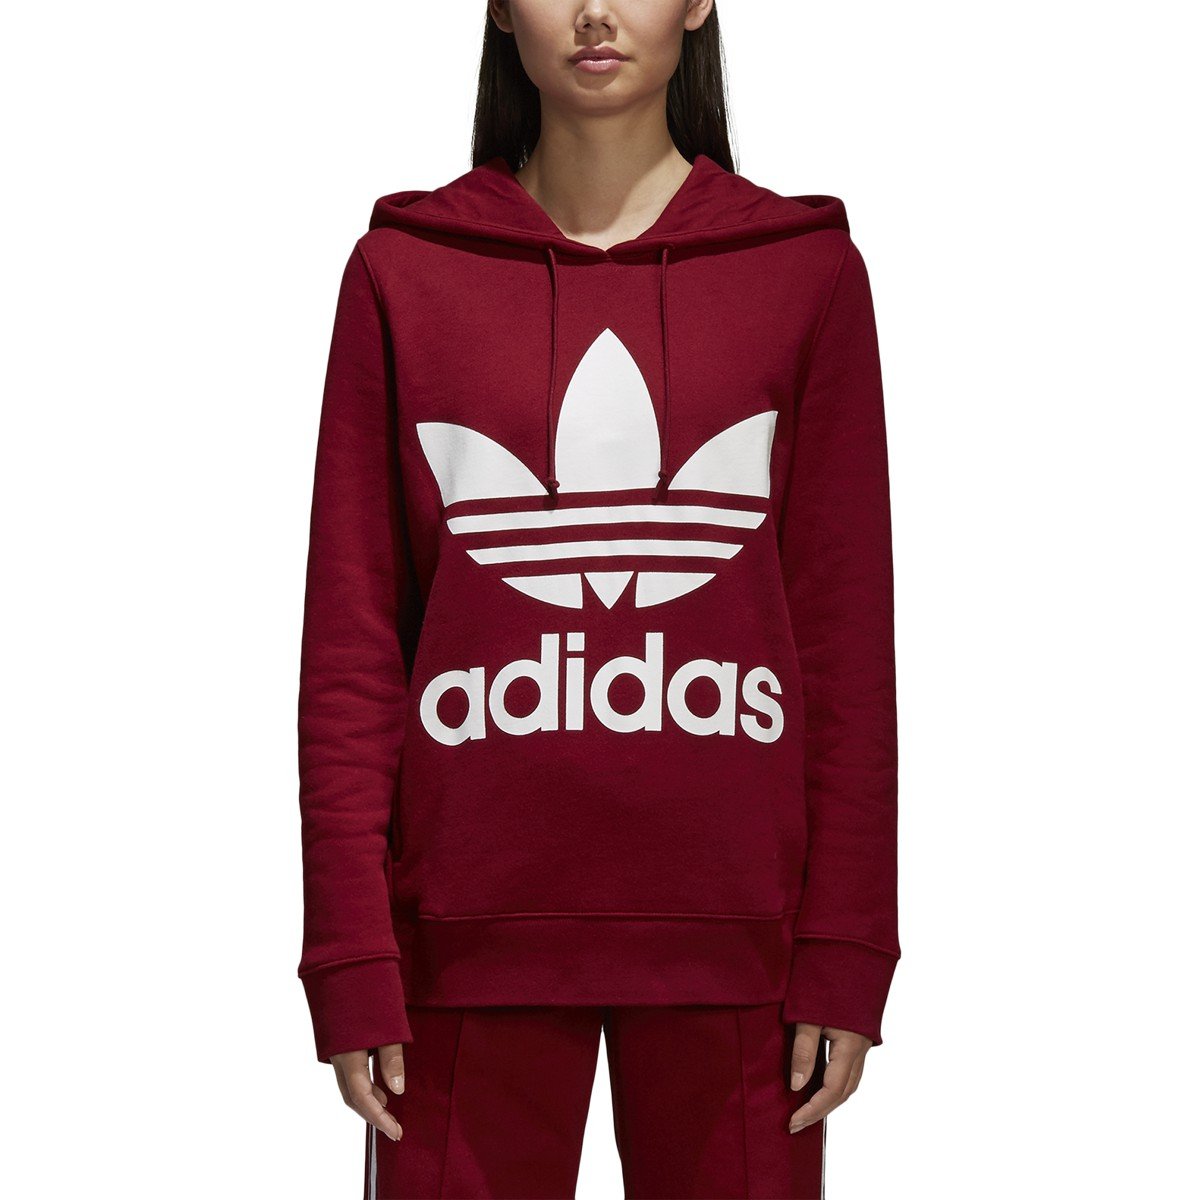 [CE2409] Womens Adidas Originals Trefoil Hoodie